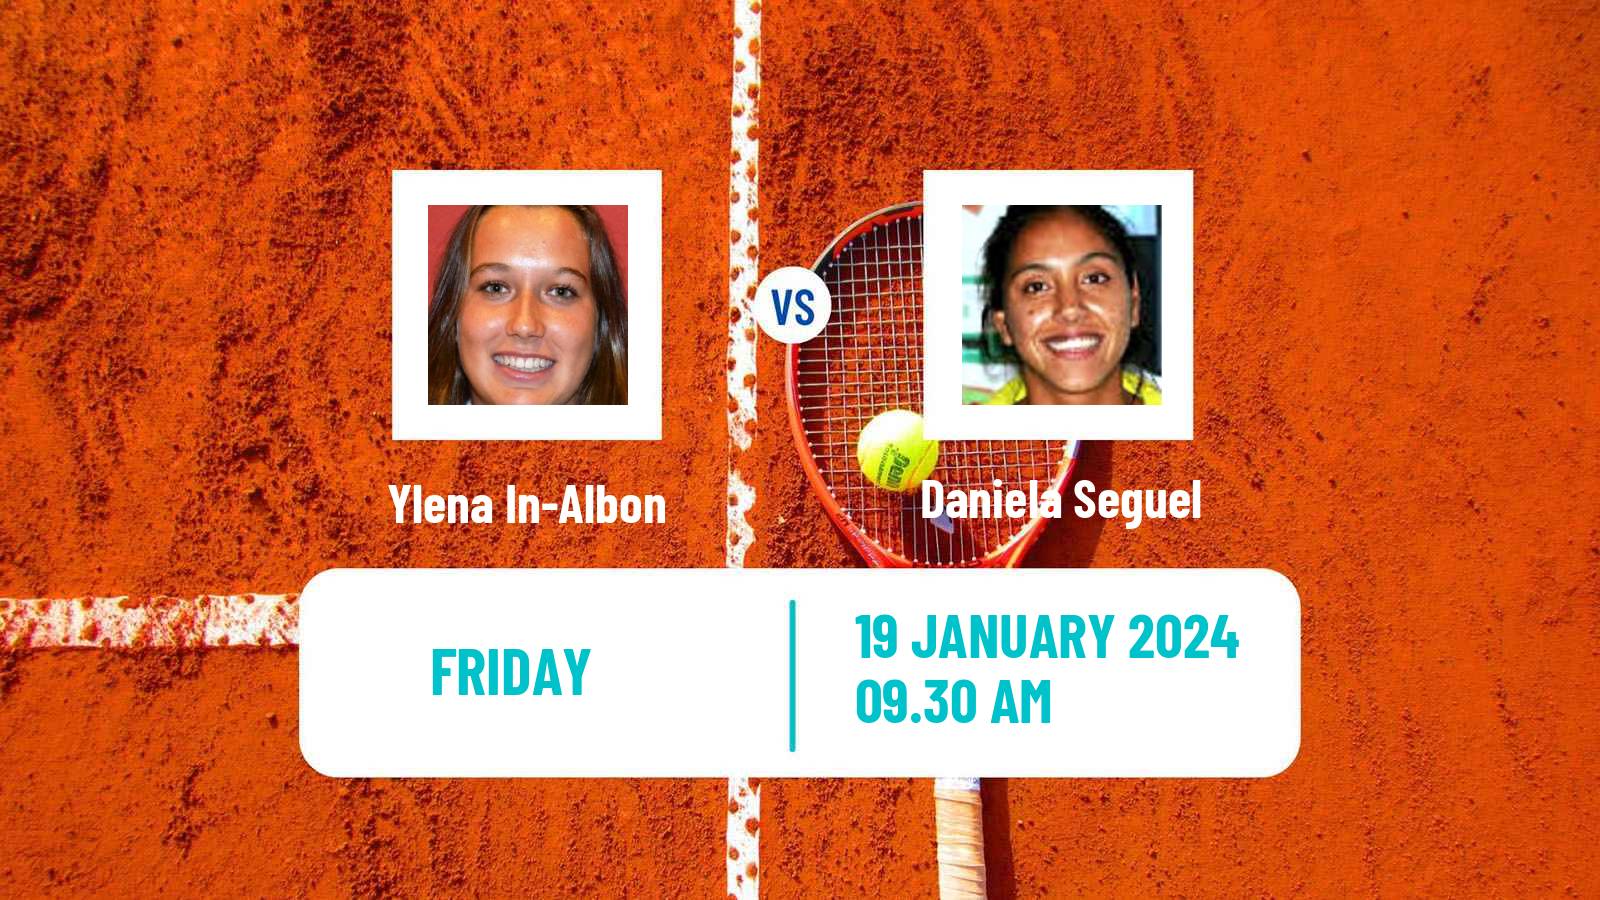 Tennis ITF W35 Buenos Aires Women Ylena In-Albon - Daniela Seguel